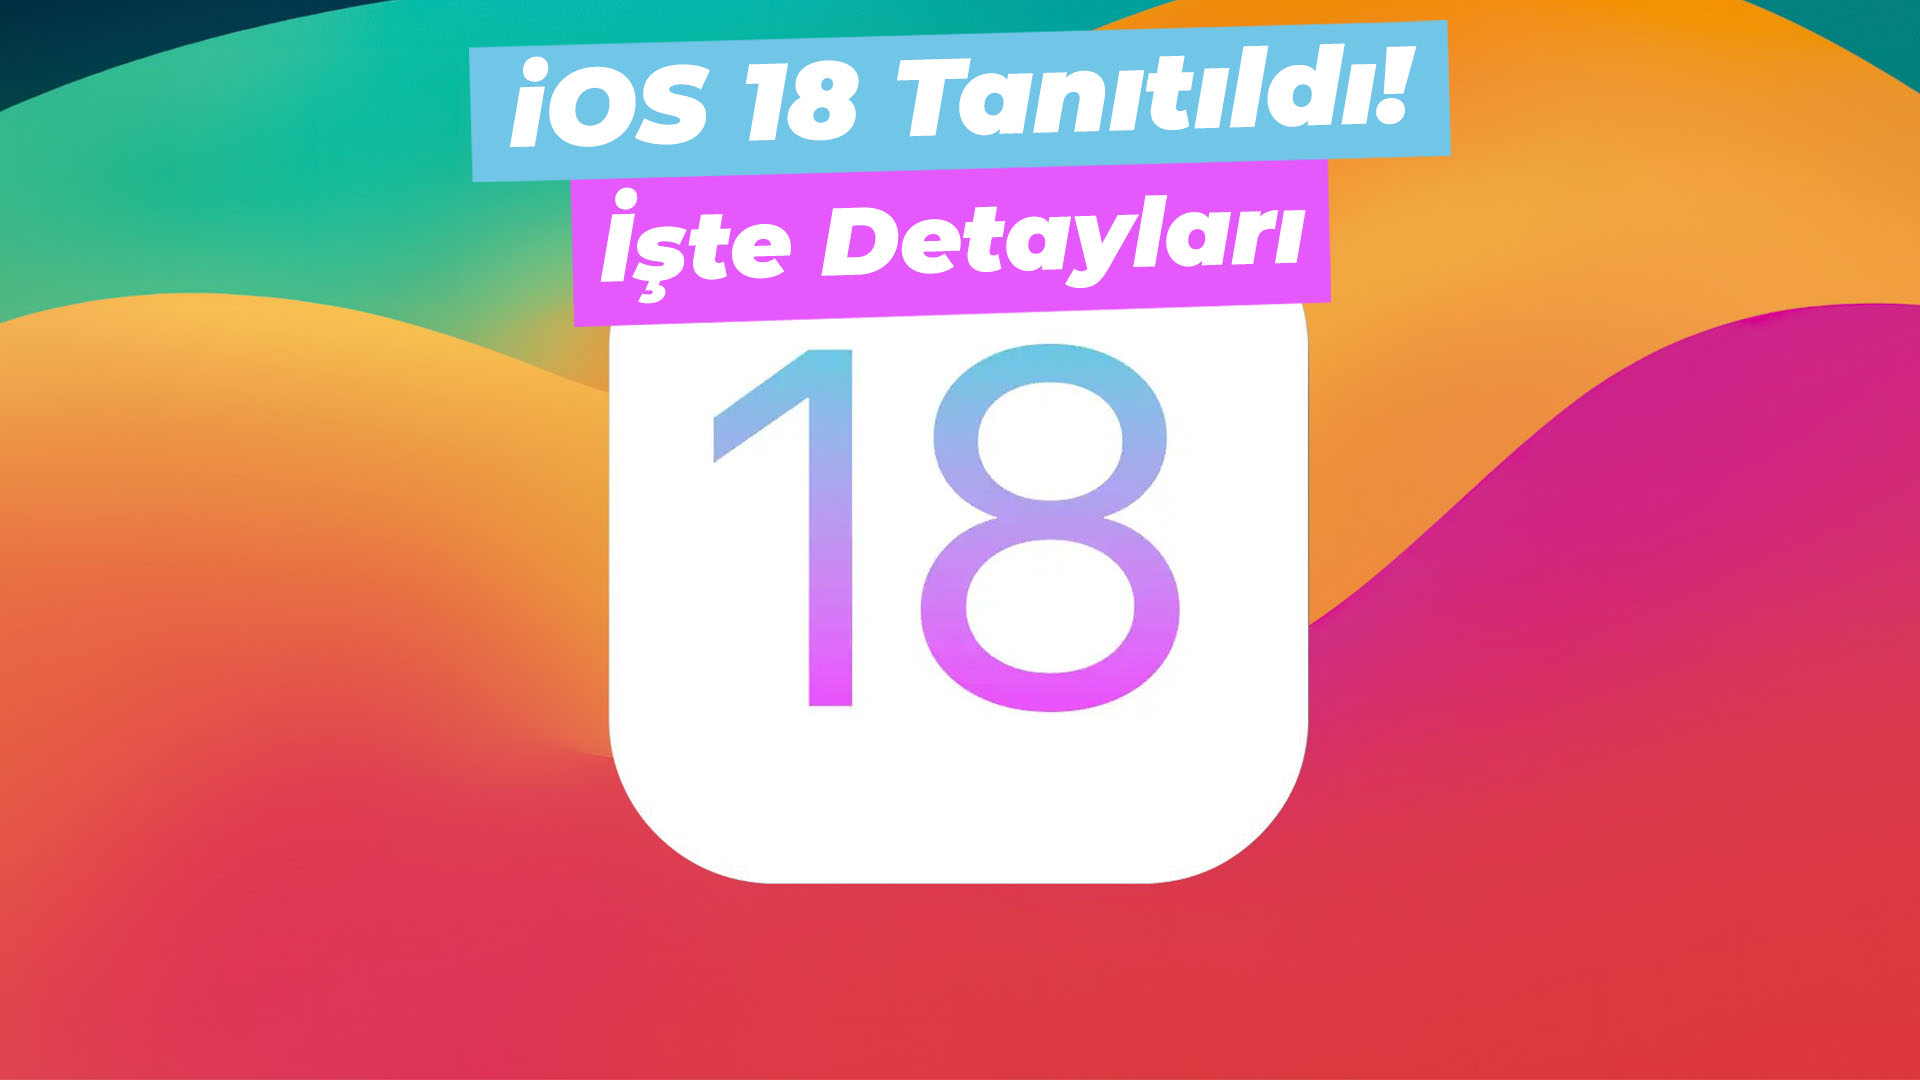 iOS 18 Tanıtıldı! İşte detayları.